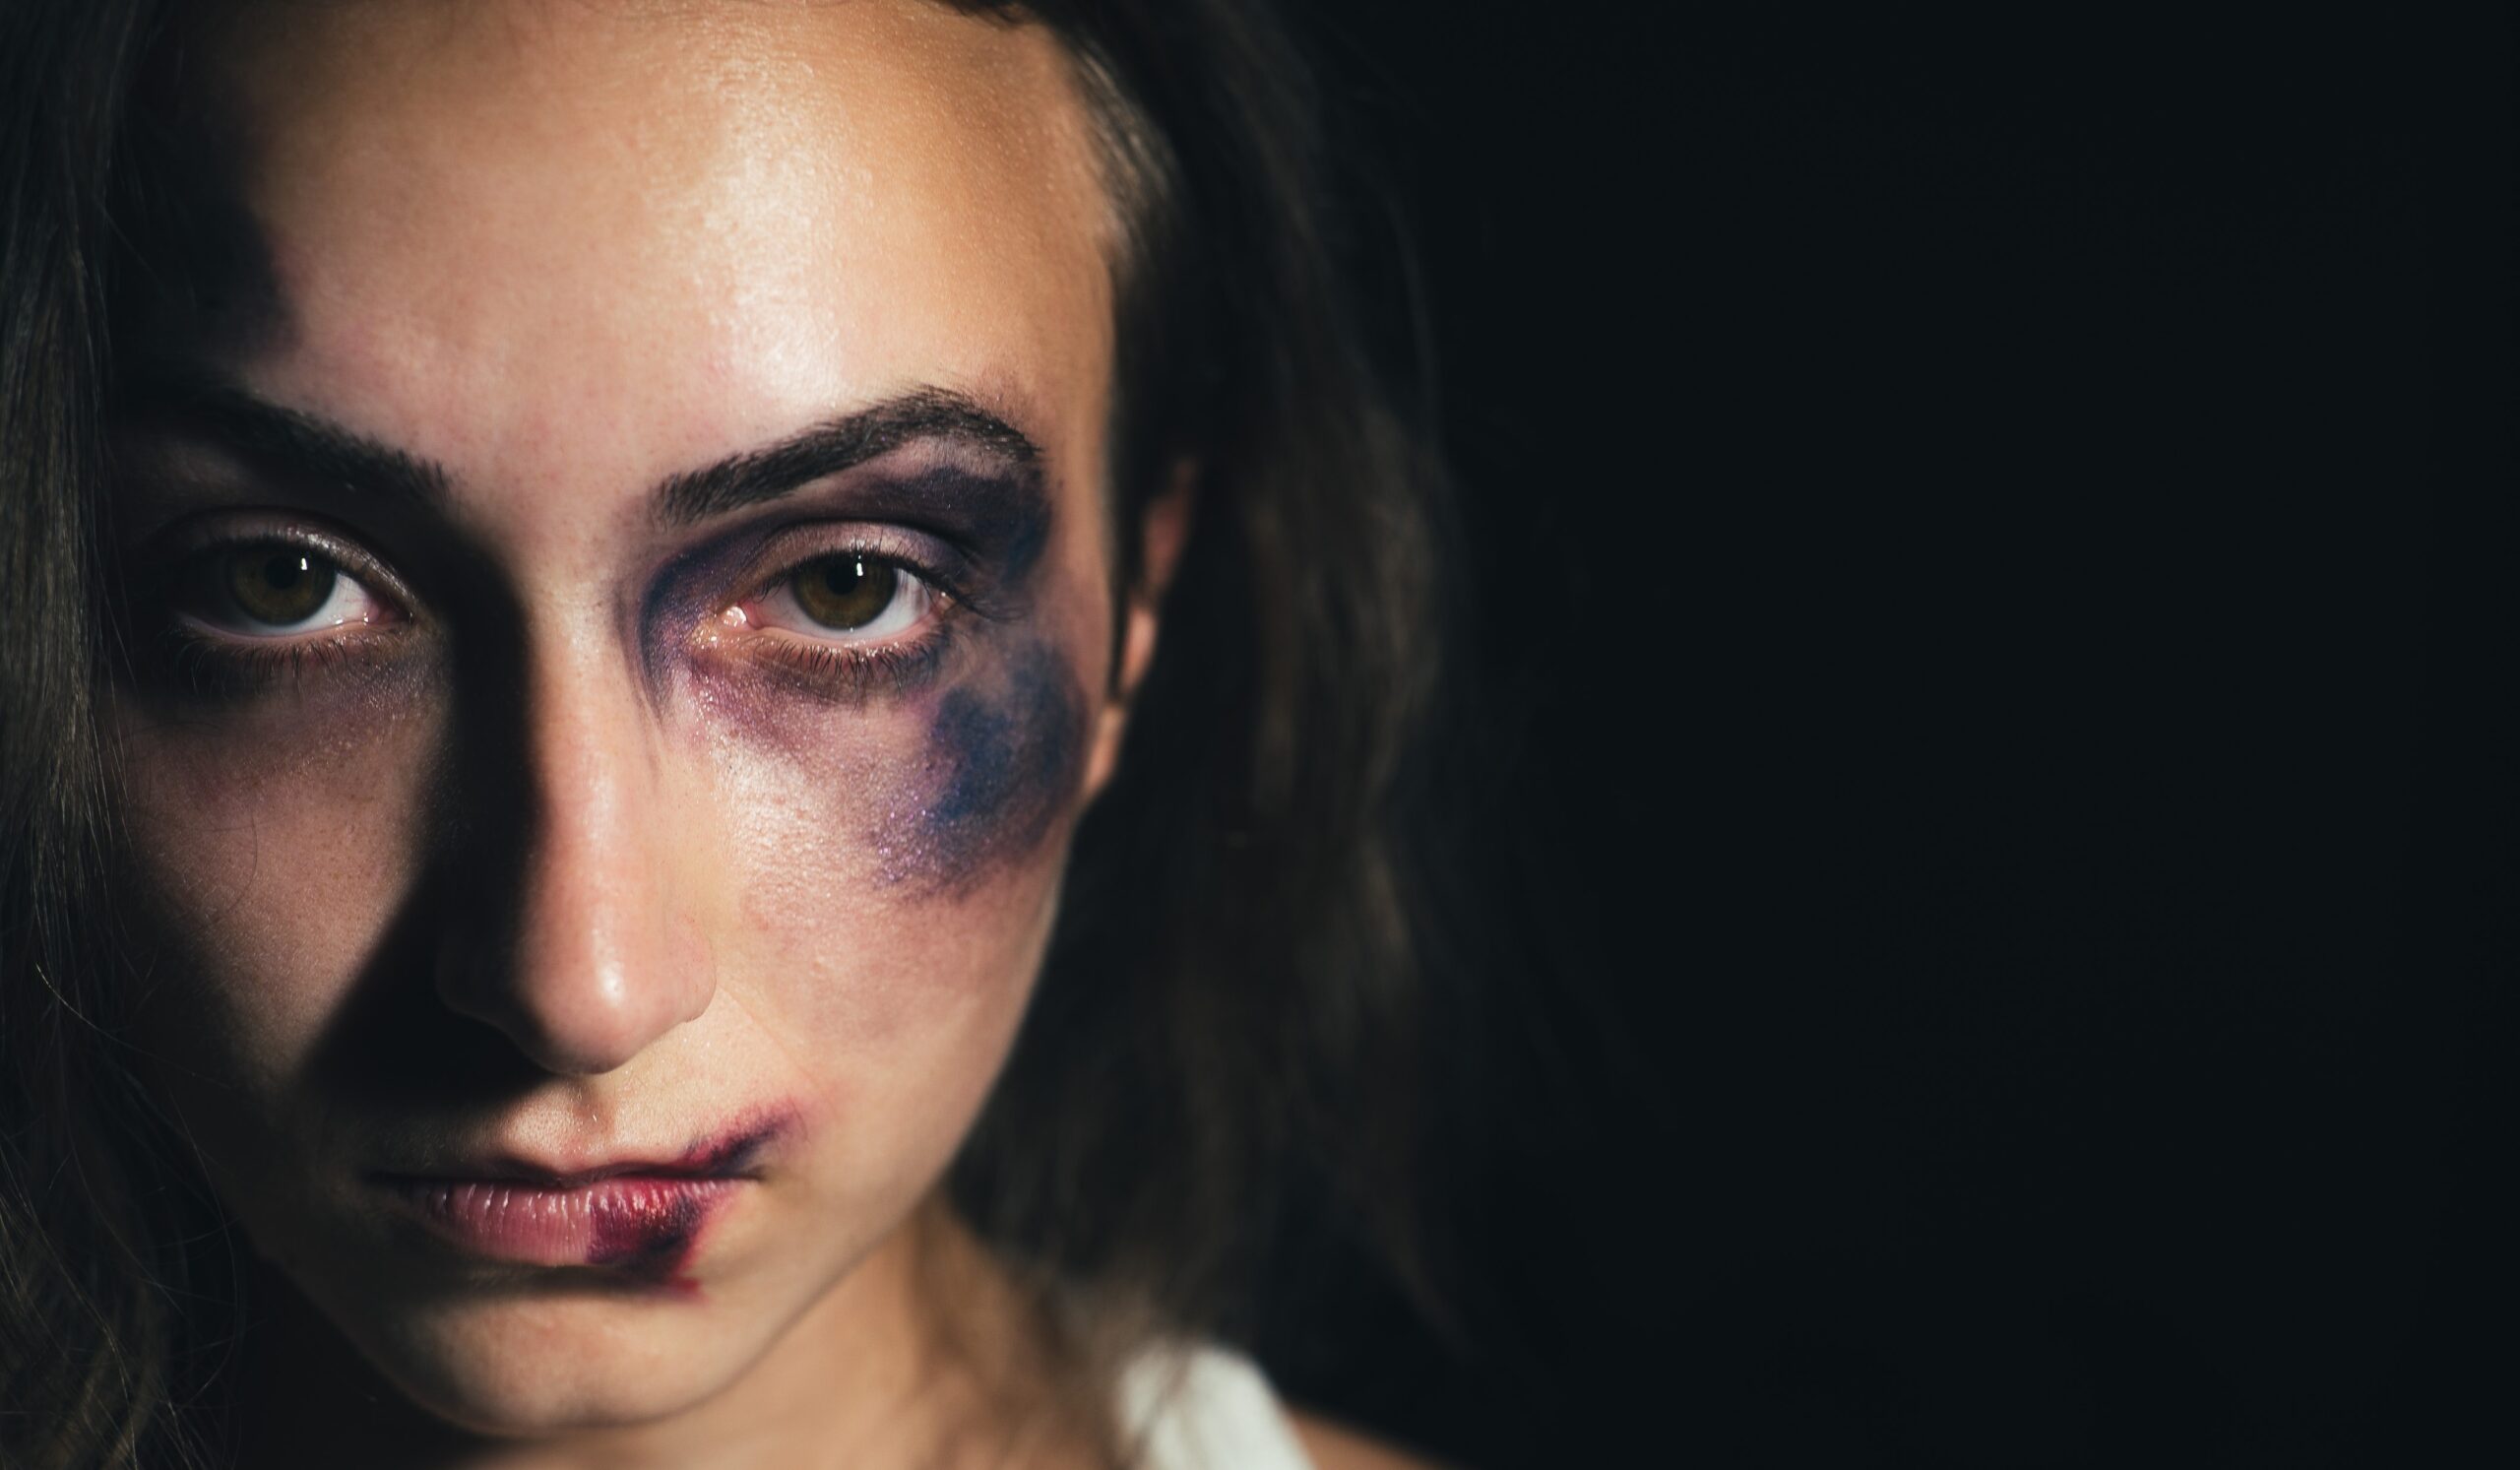 العنف ضد المرأة